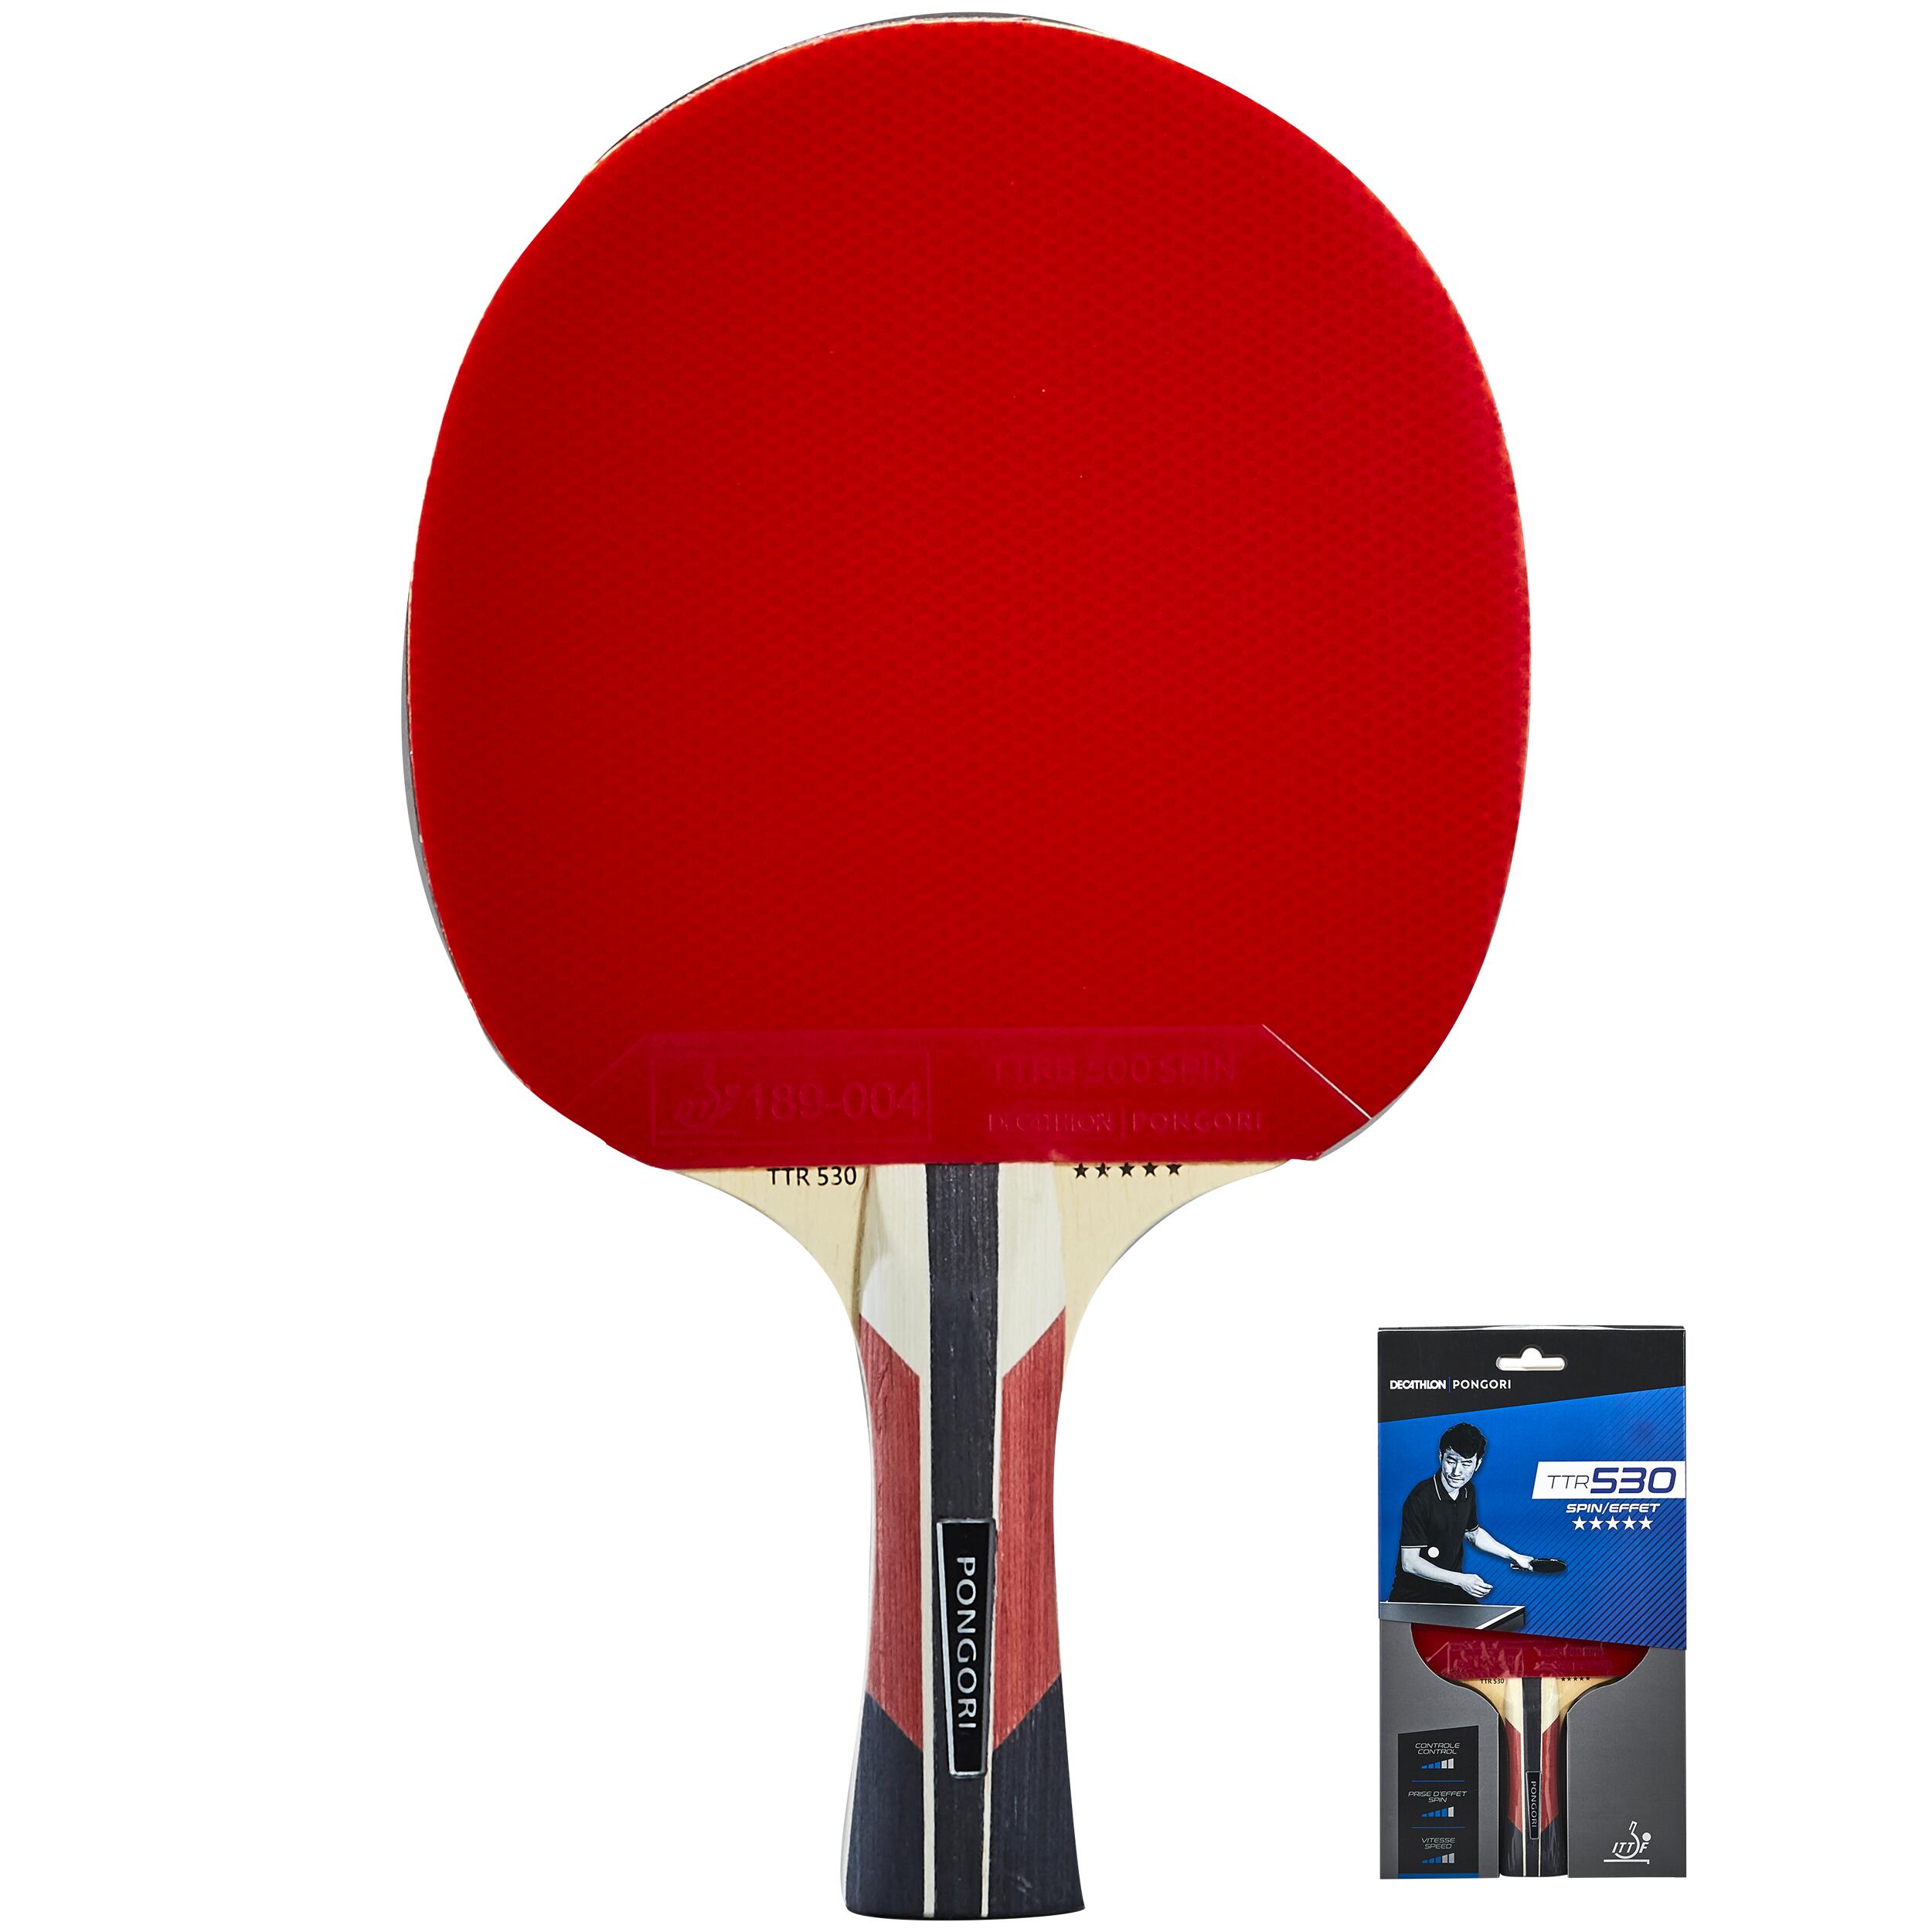 Y-H Housse de protection pour raquette de tennis de table en nylon